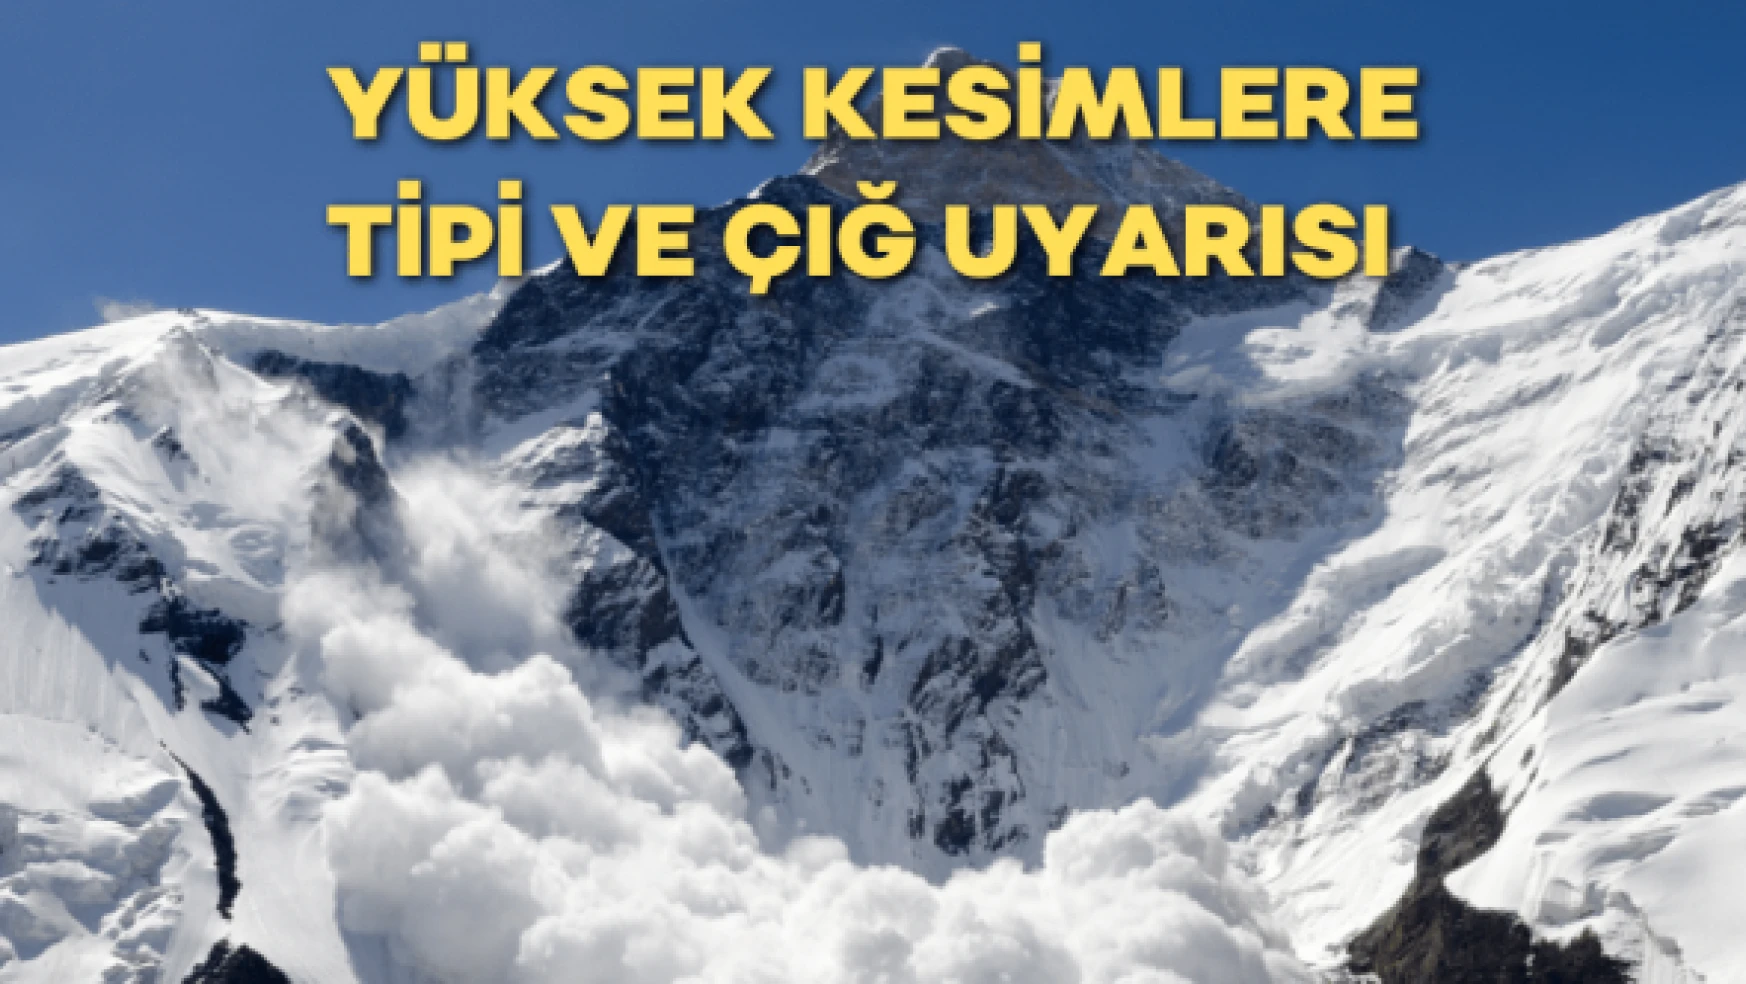 Erzurum'un yüksek kesimlerine uyarı